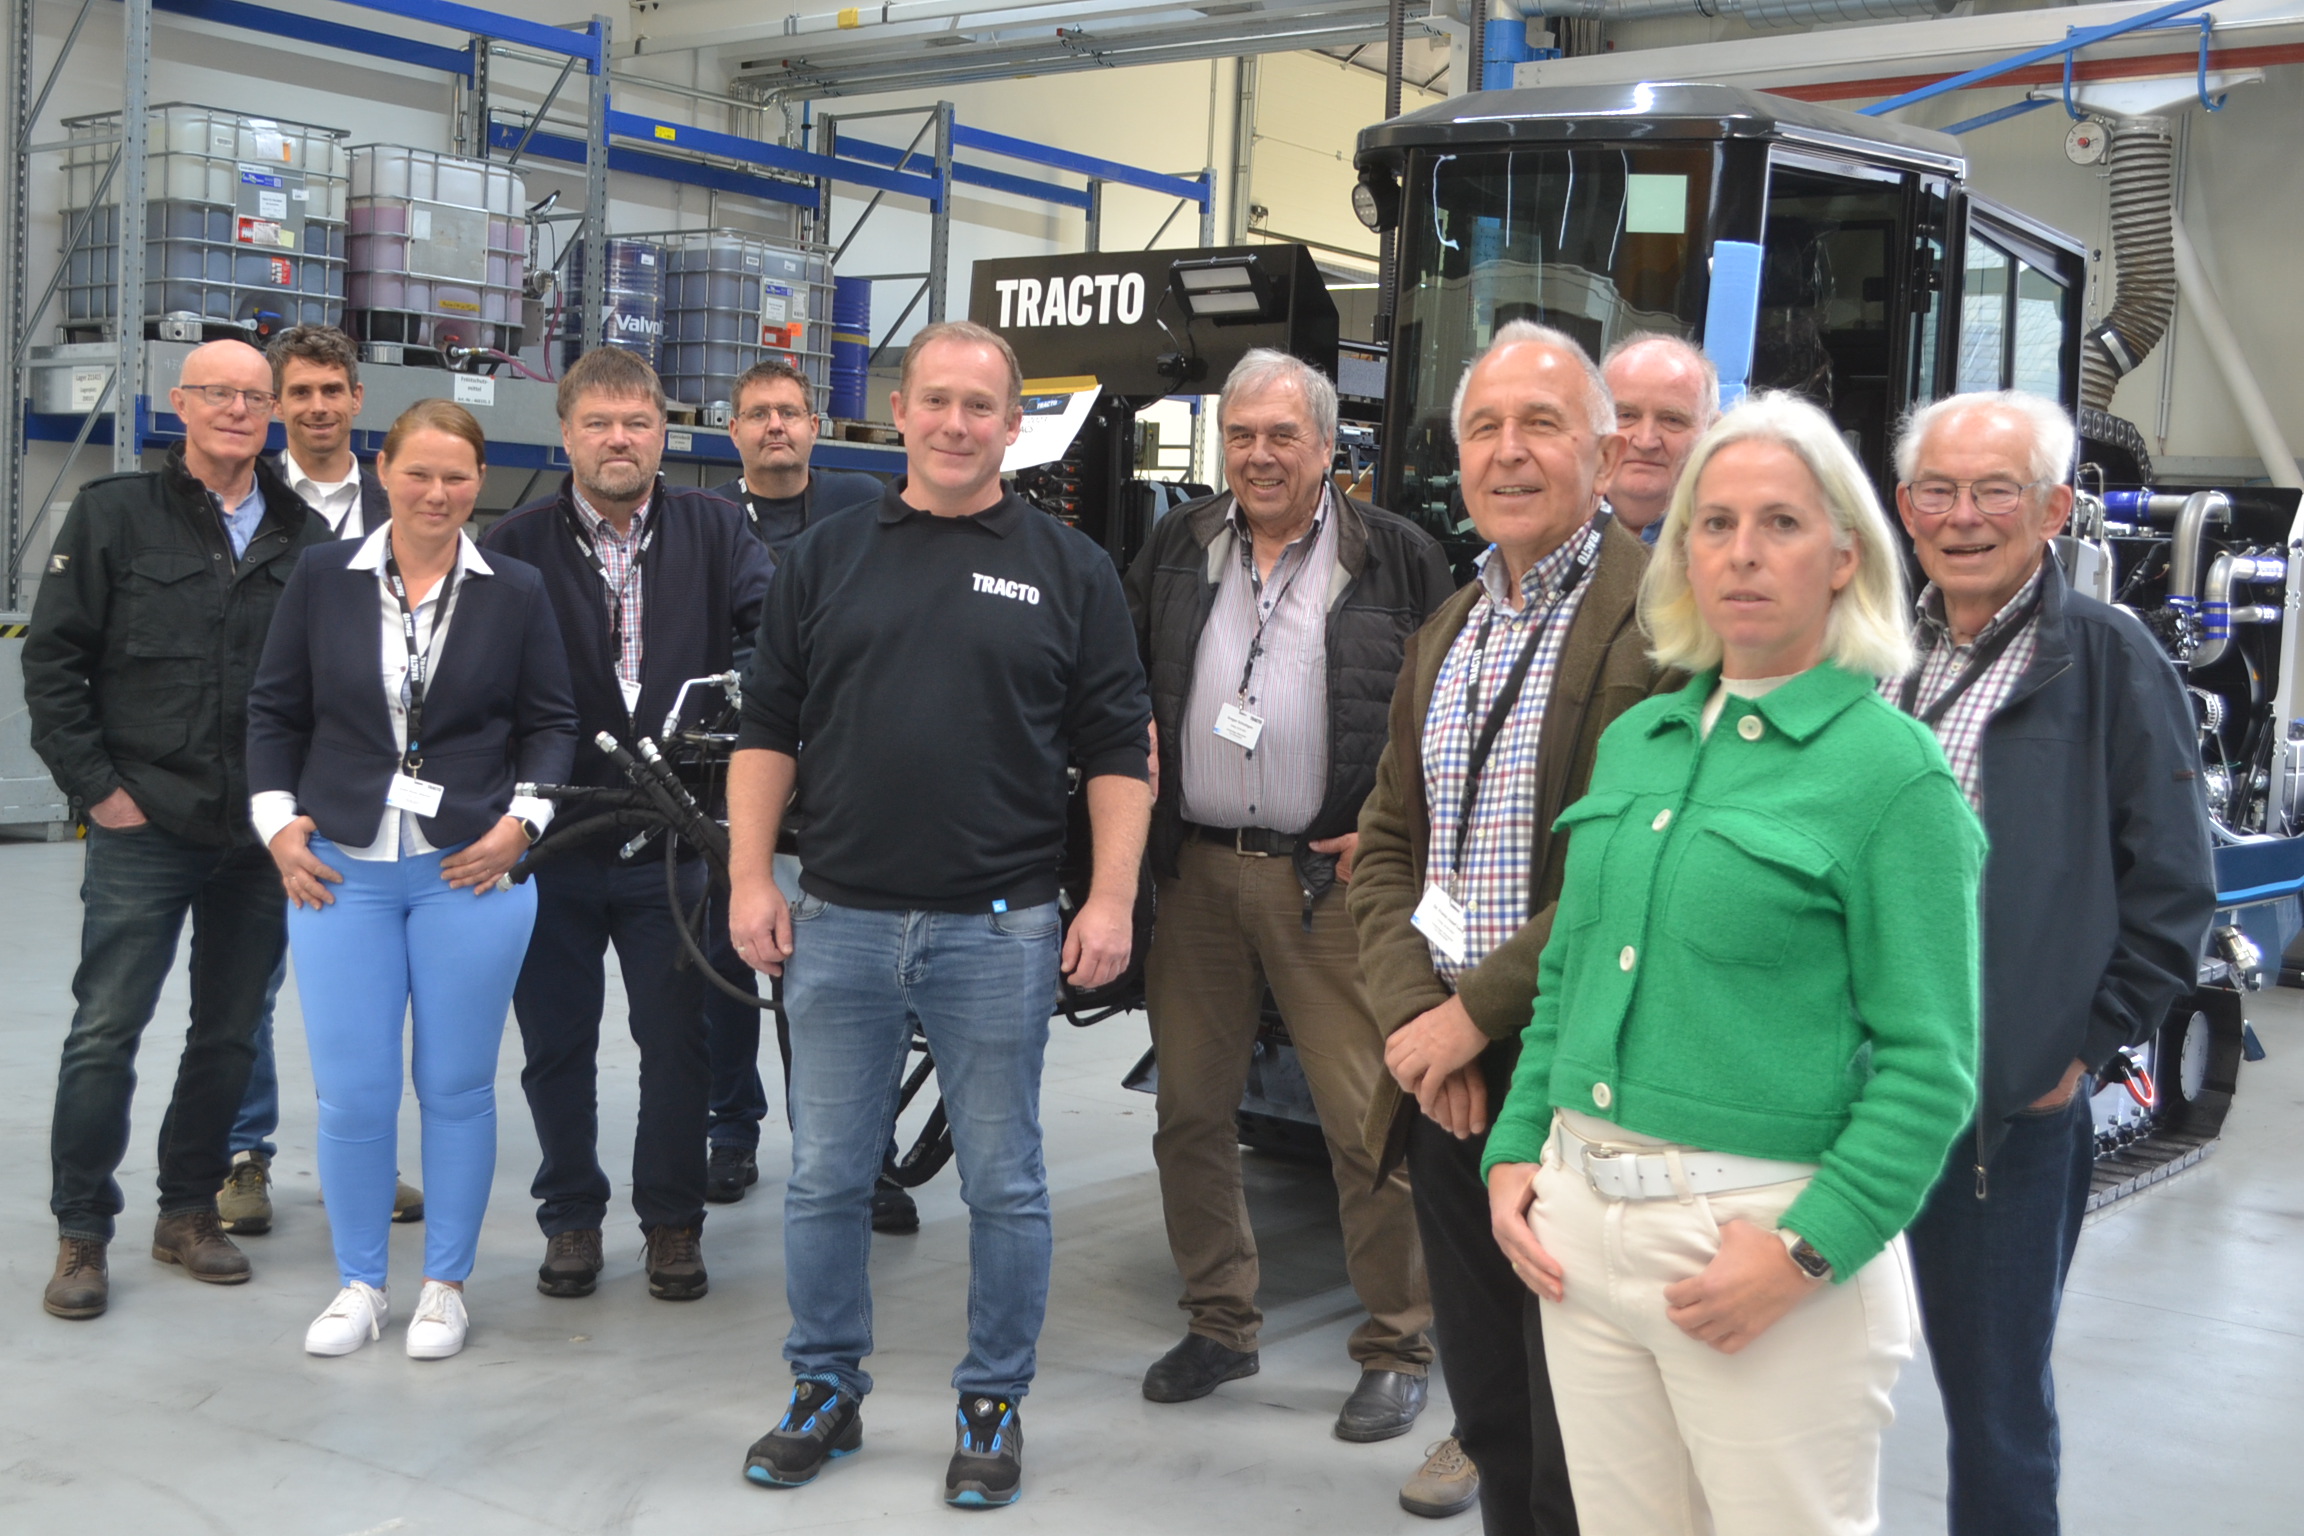 Foto: privat. Tracto-Mitarbeiter Christoph Göbel (M.) mit CDU-Vertretern in der Montagehalle